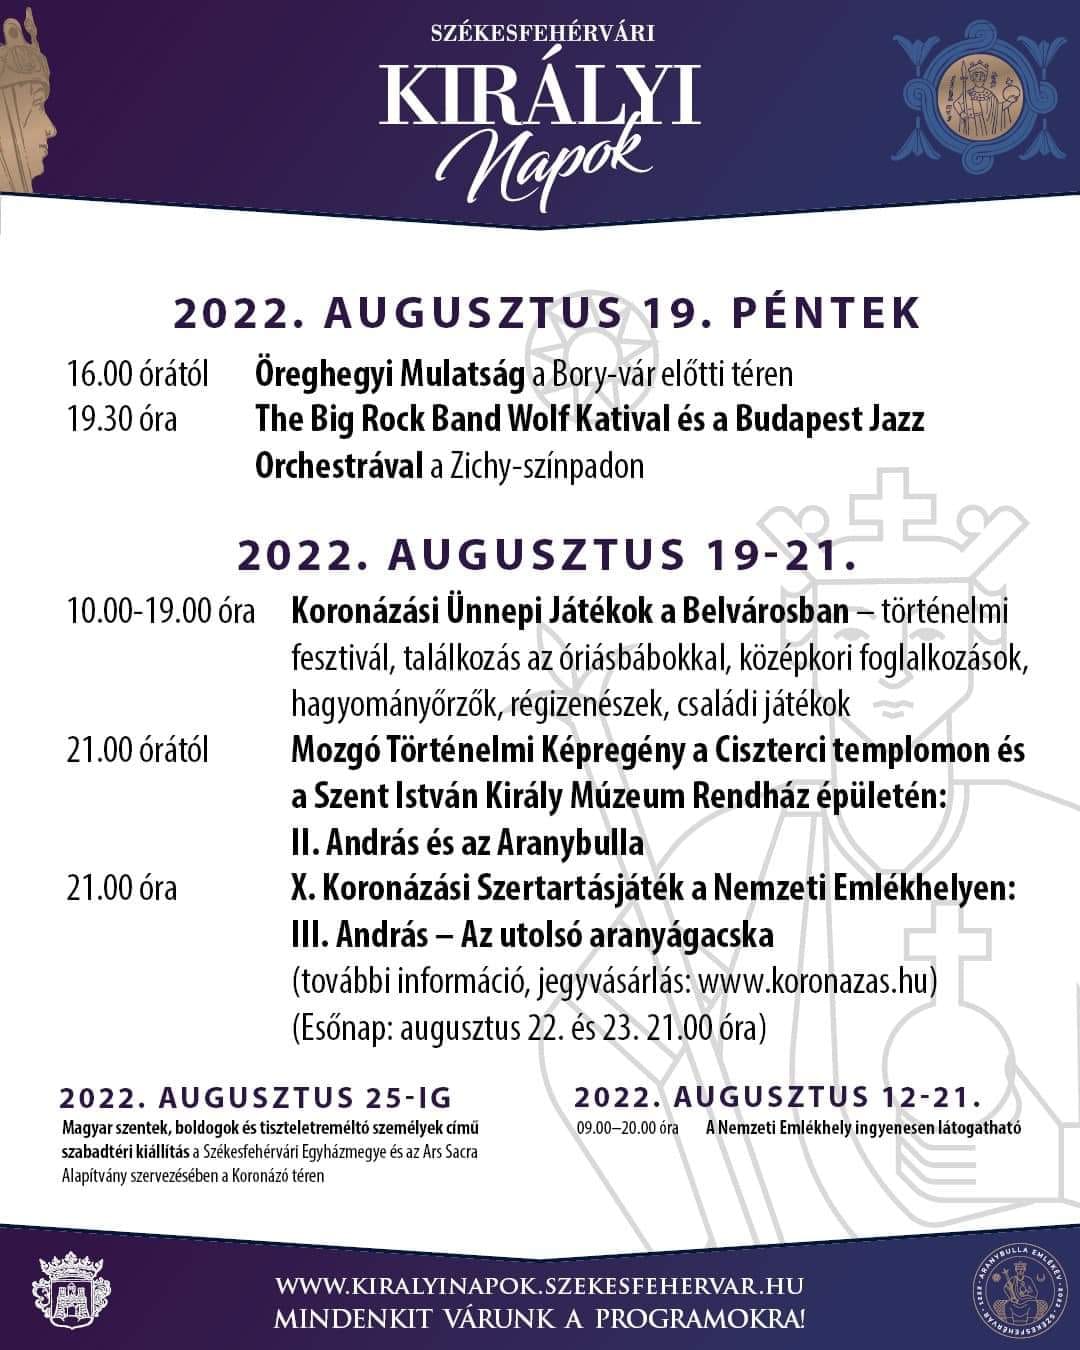 A Székesfehérvári Királyi Napok programjai augusztus 19-én, pénteken